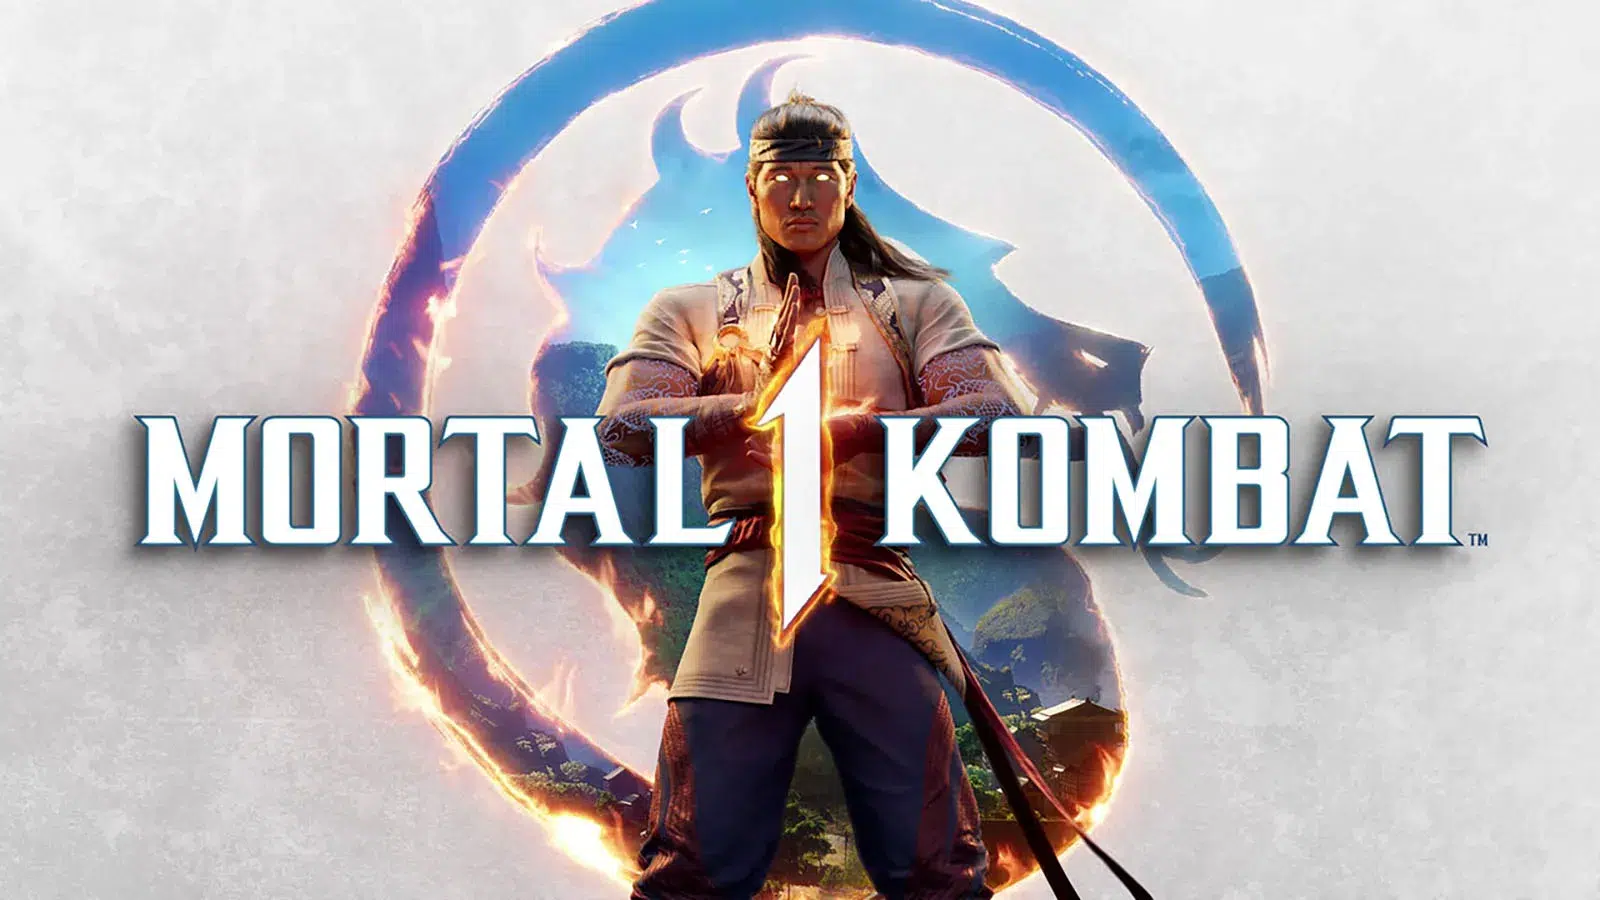 レビュー: Mortal Kombat 1 はこれまでのシリーズ最高のゲームです